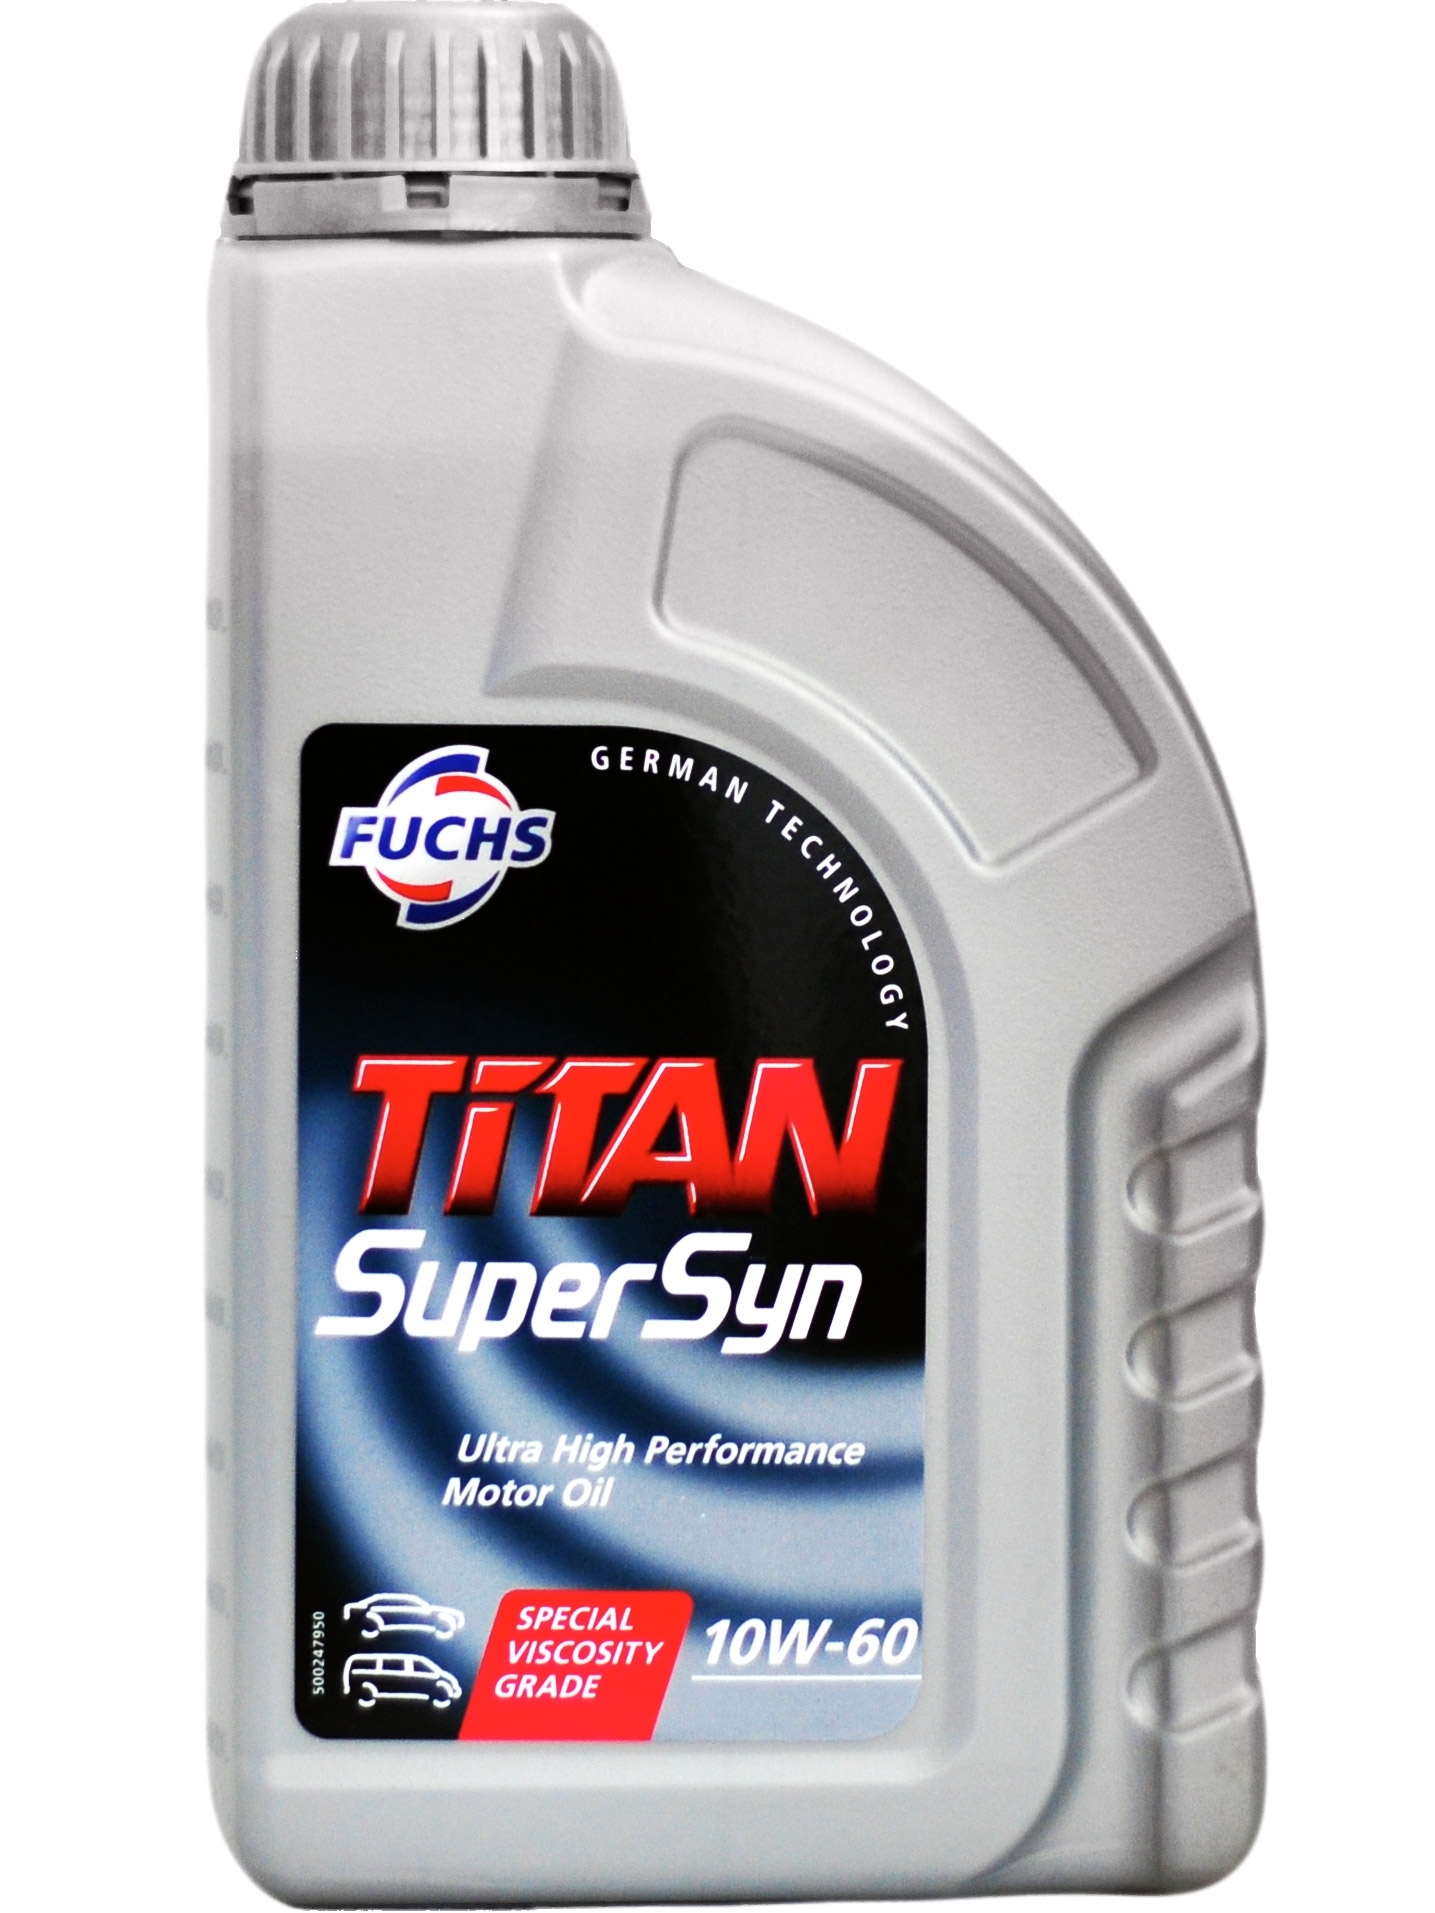 TITAN SUPERSYN Fuchs 600761646